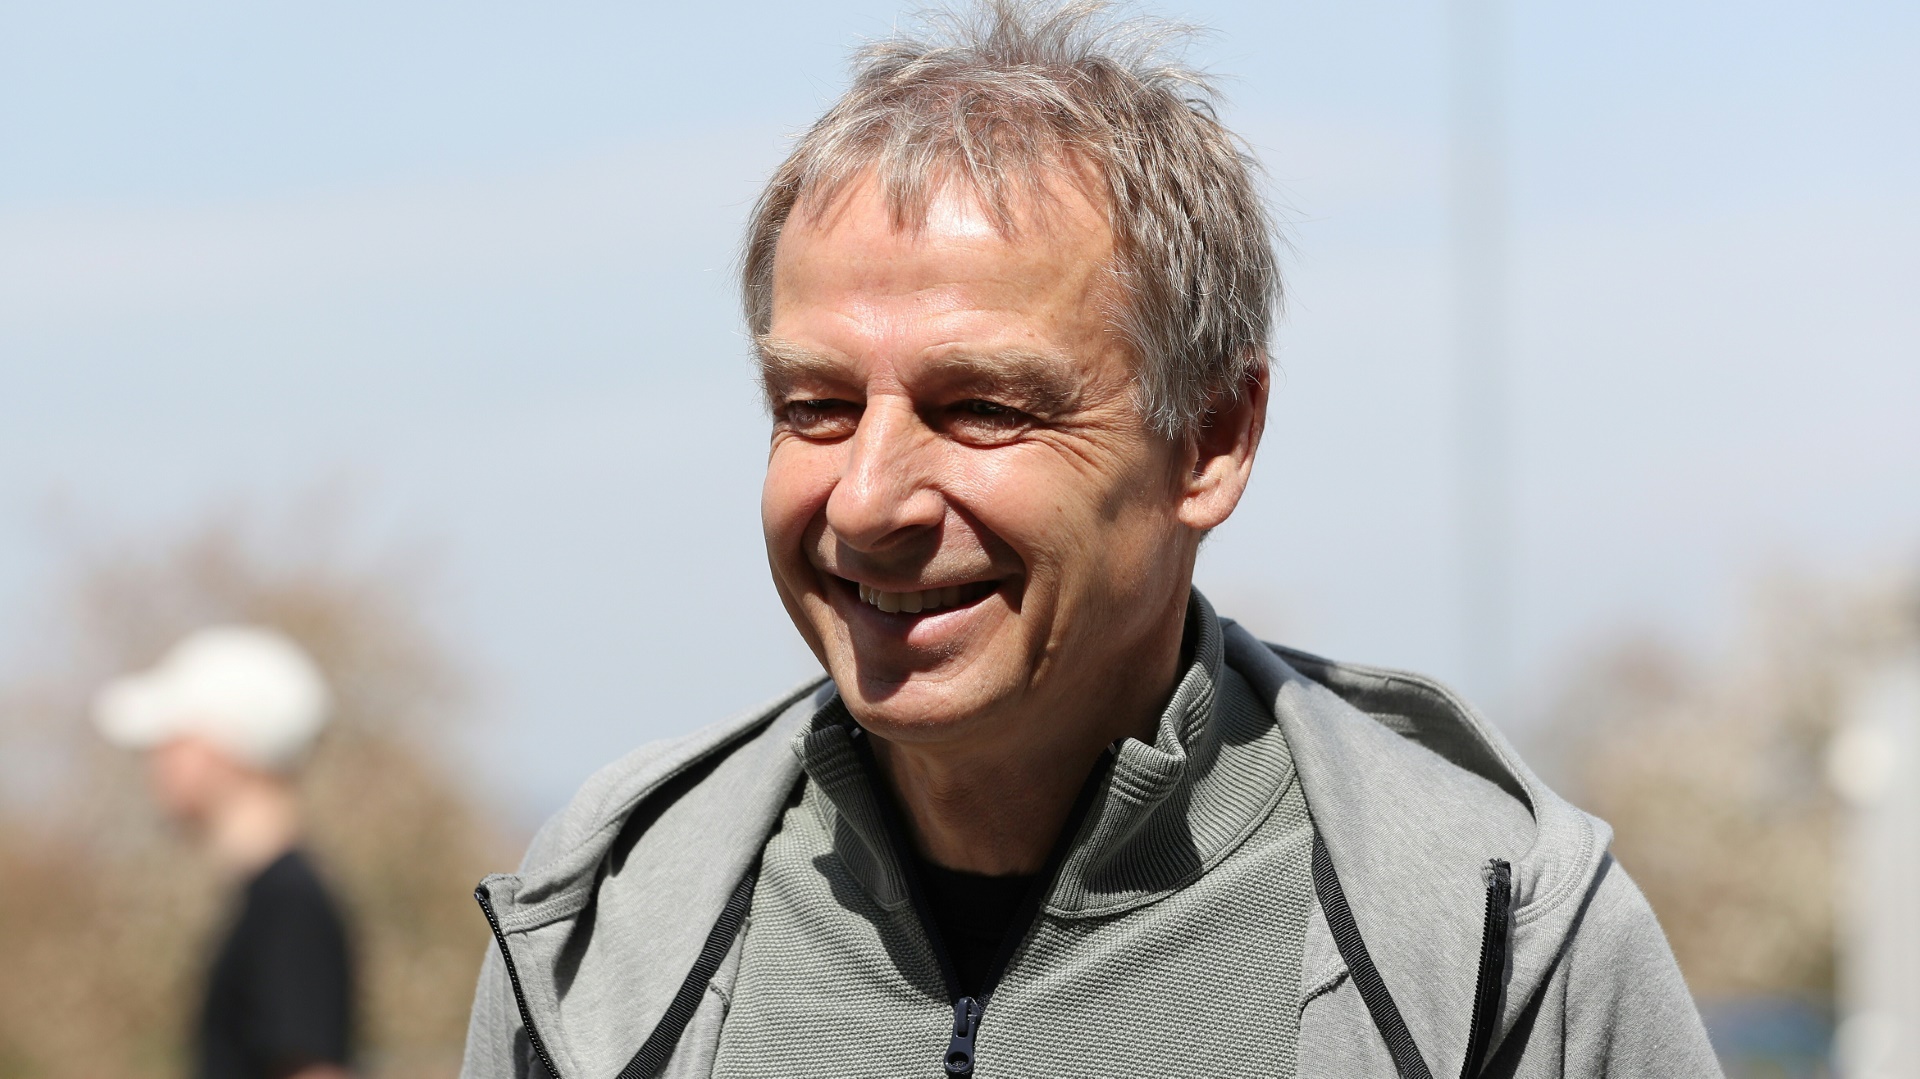 Klinsmann über Medien: "Immer mit einem kritischen Auge"